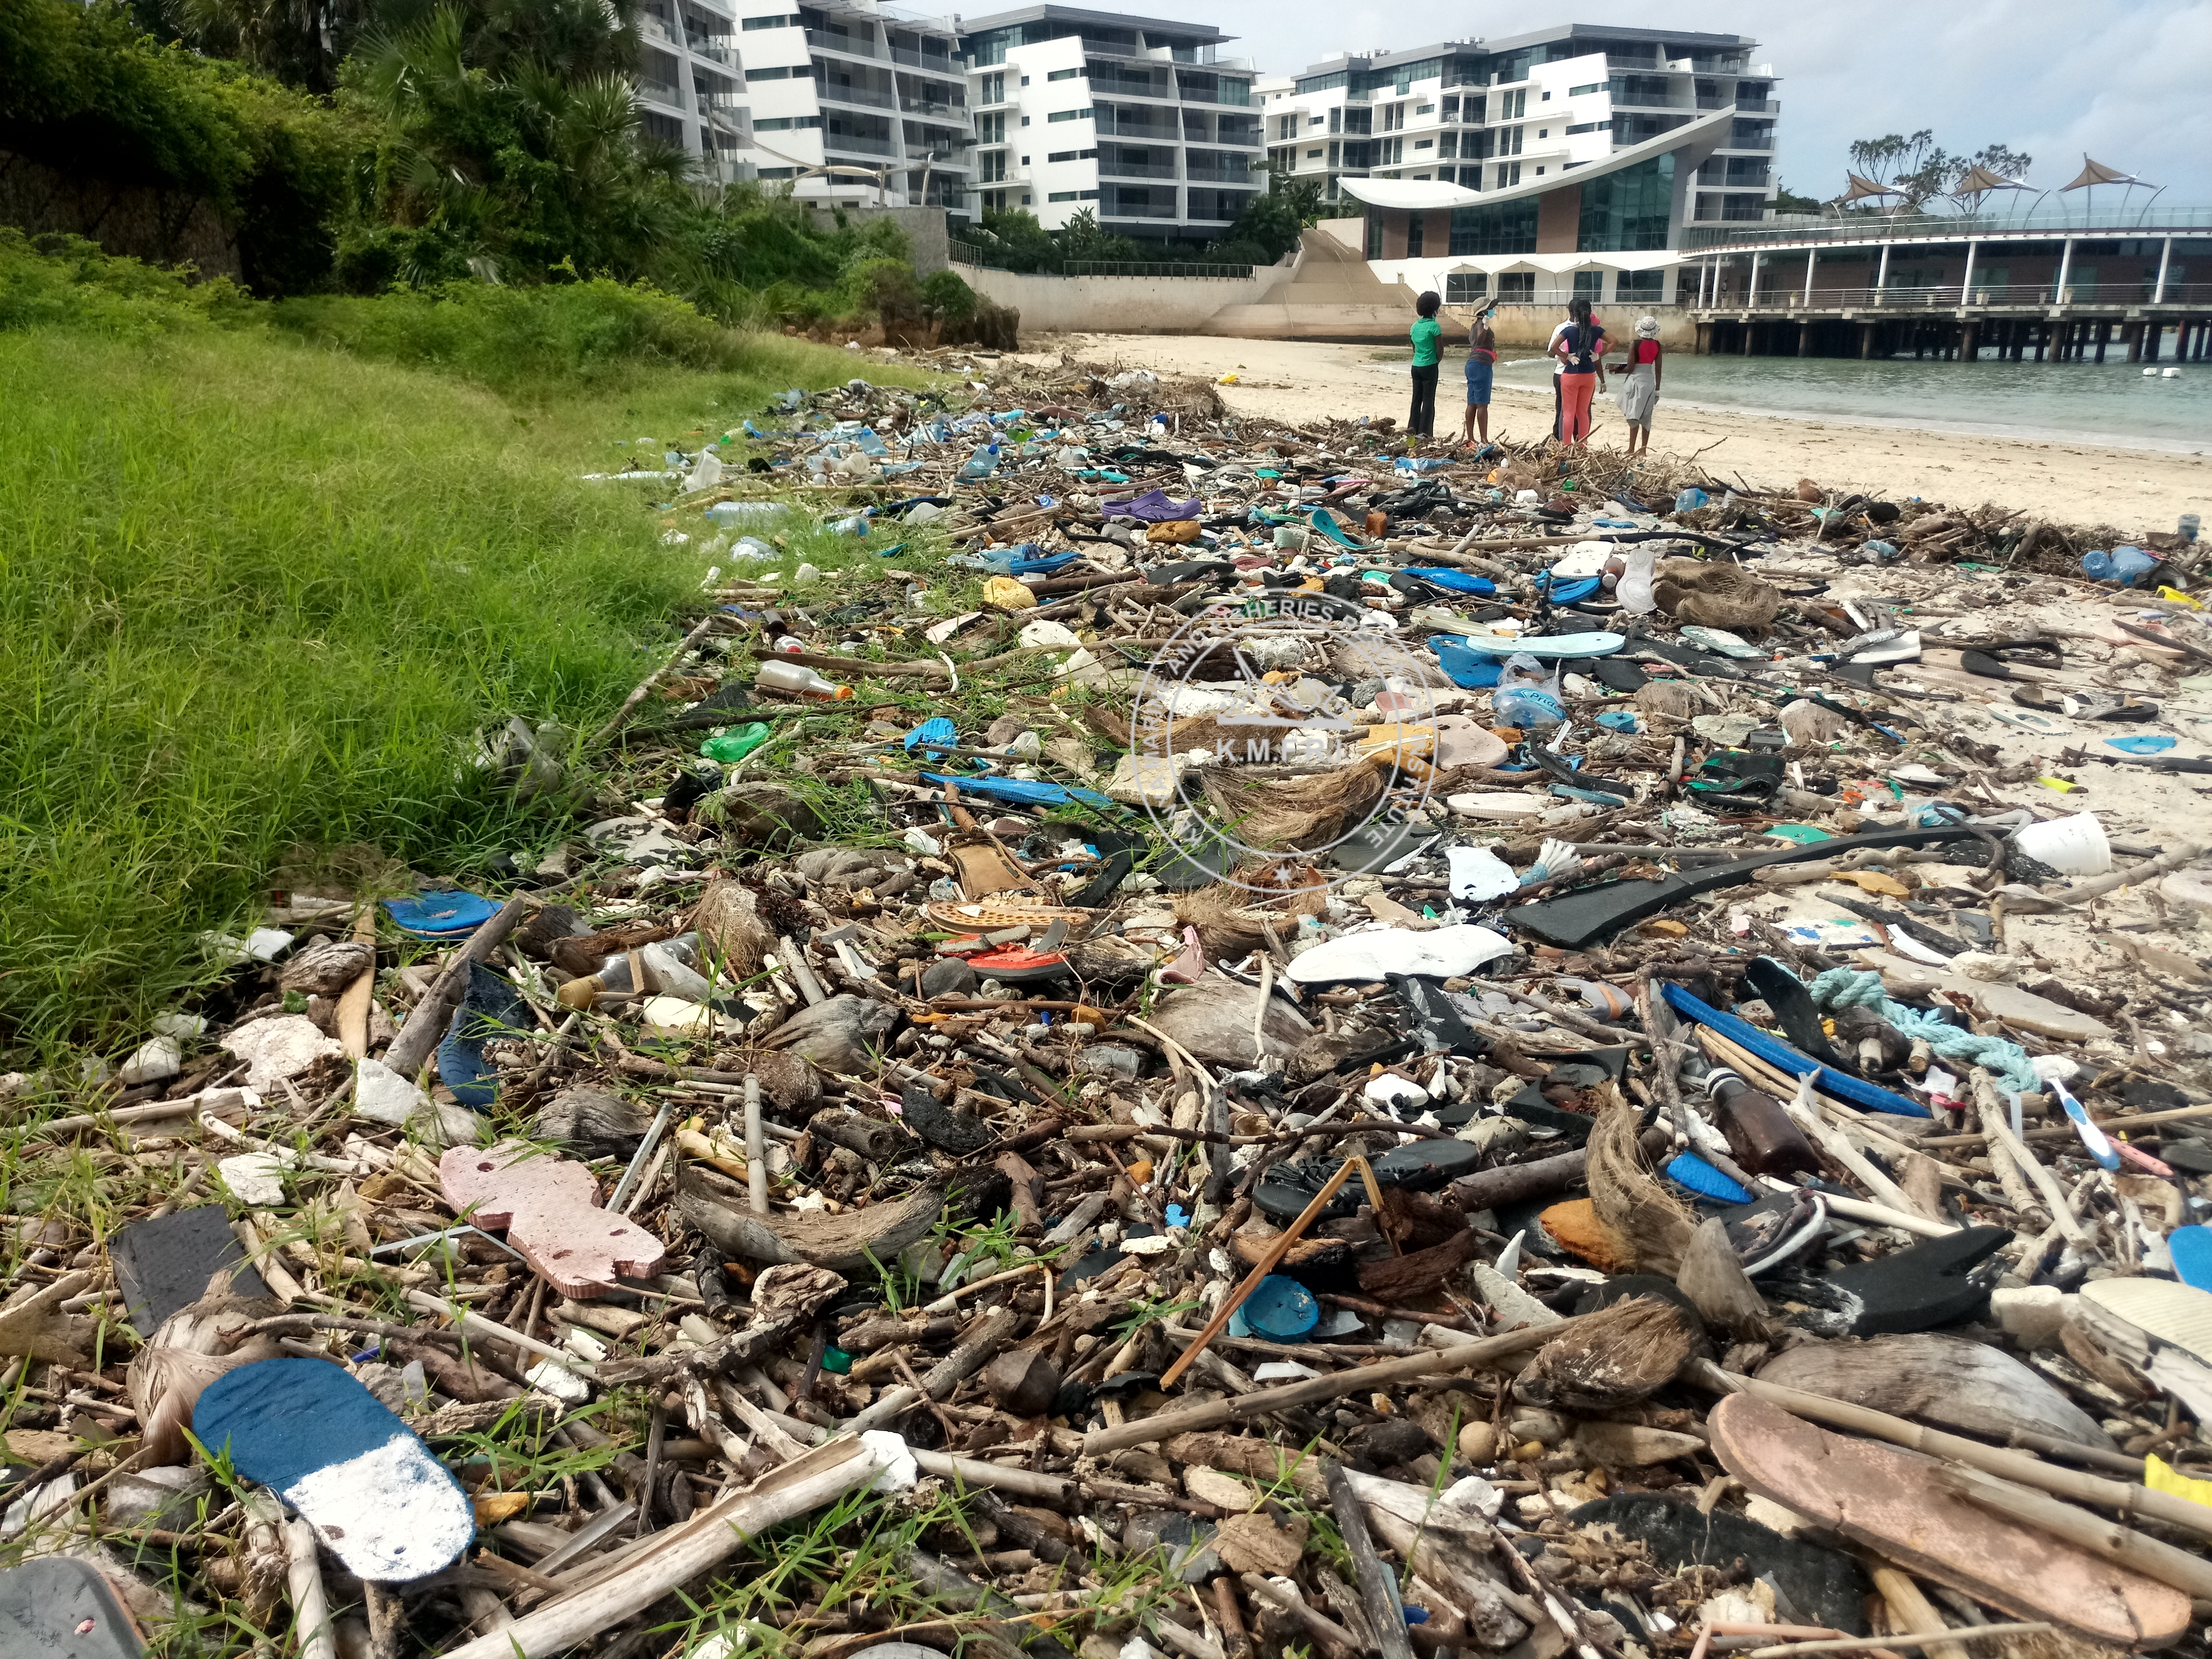 Litter accumulated in Mkomani Beach